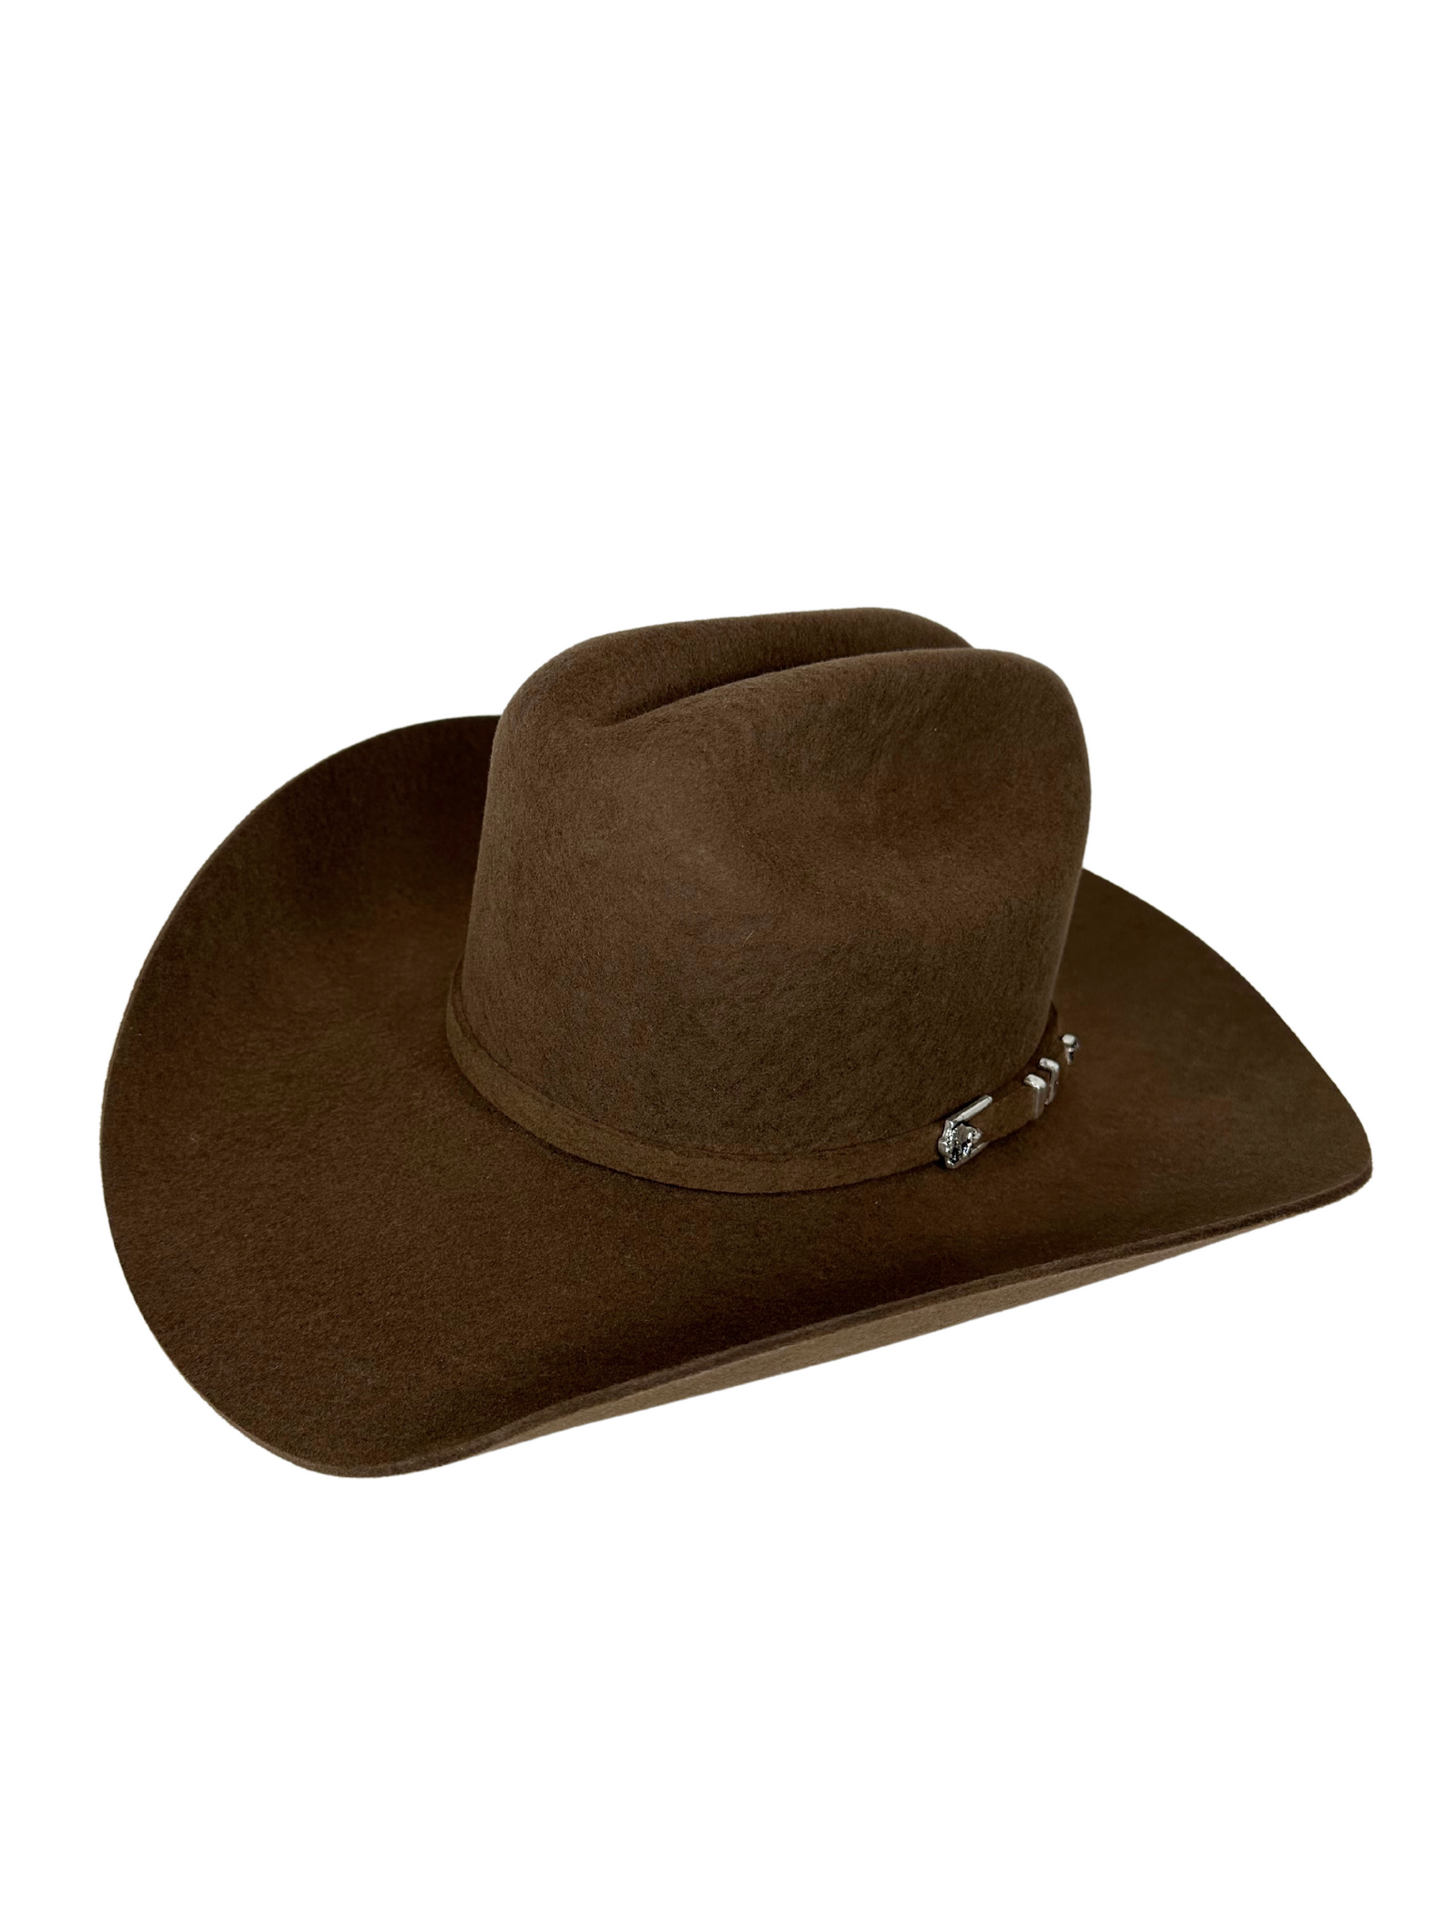 Stetson Apache 4X Cowboy Hat - Mink